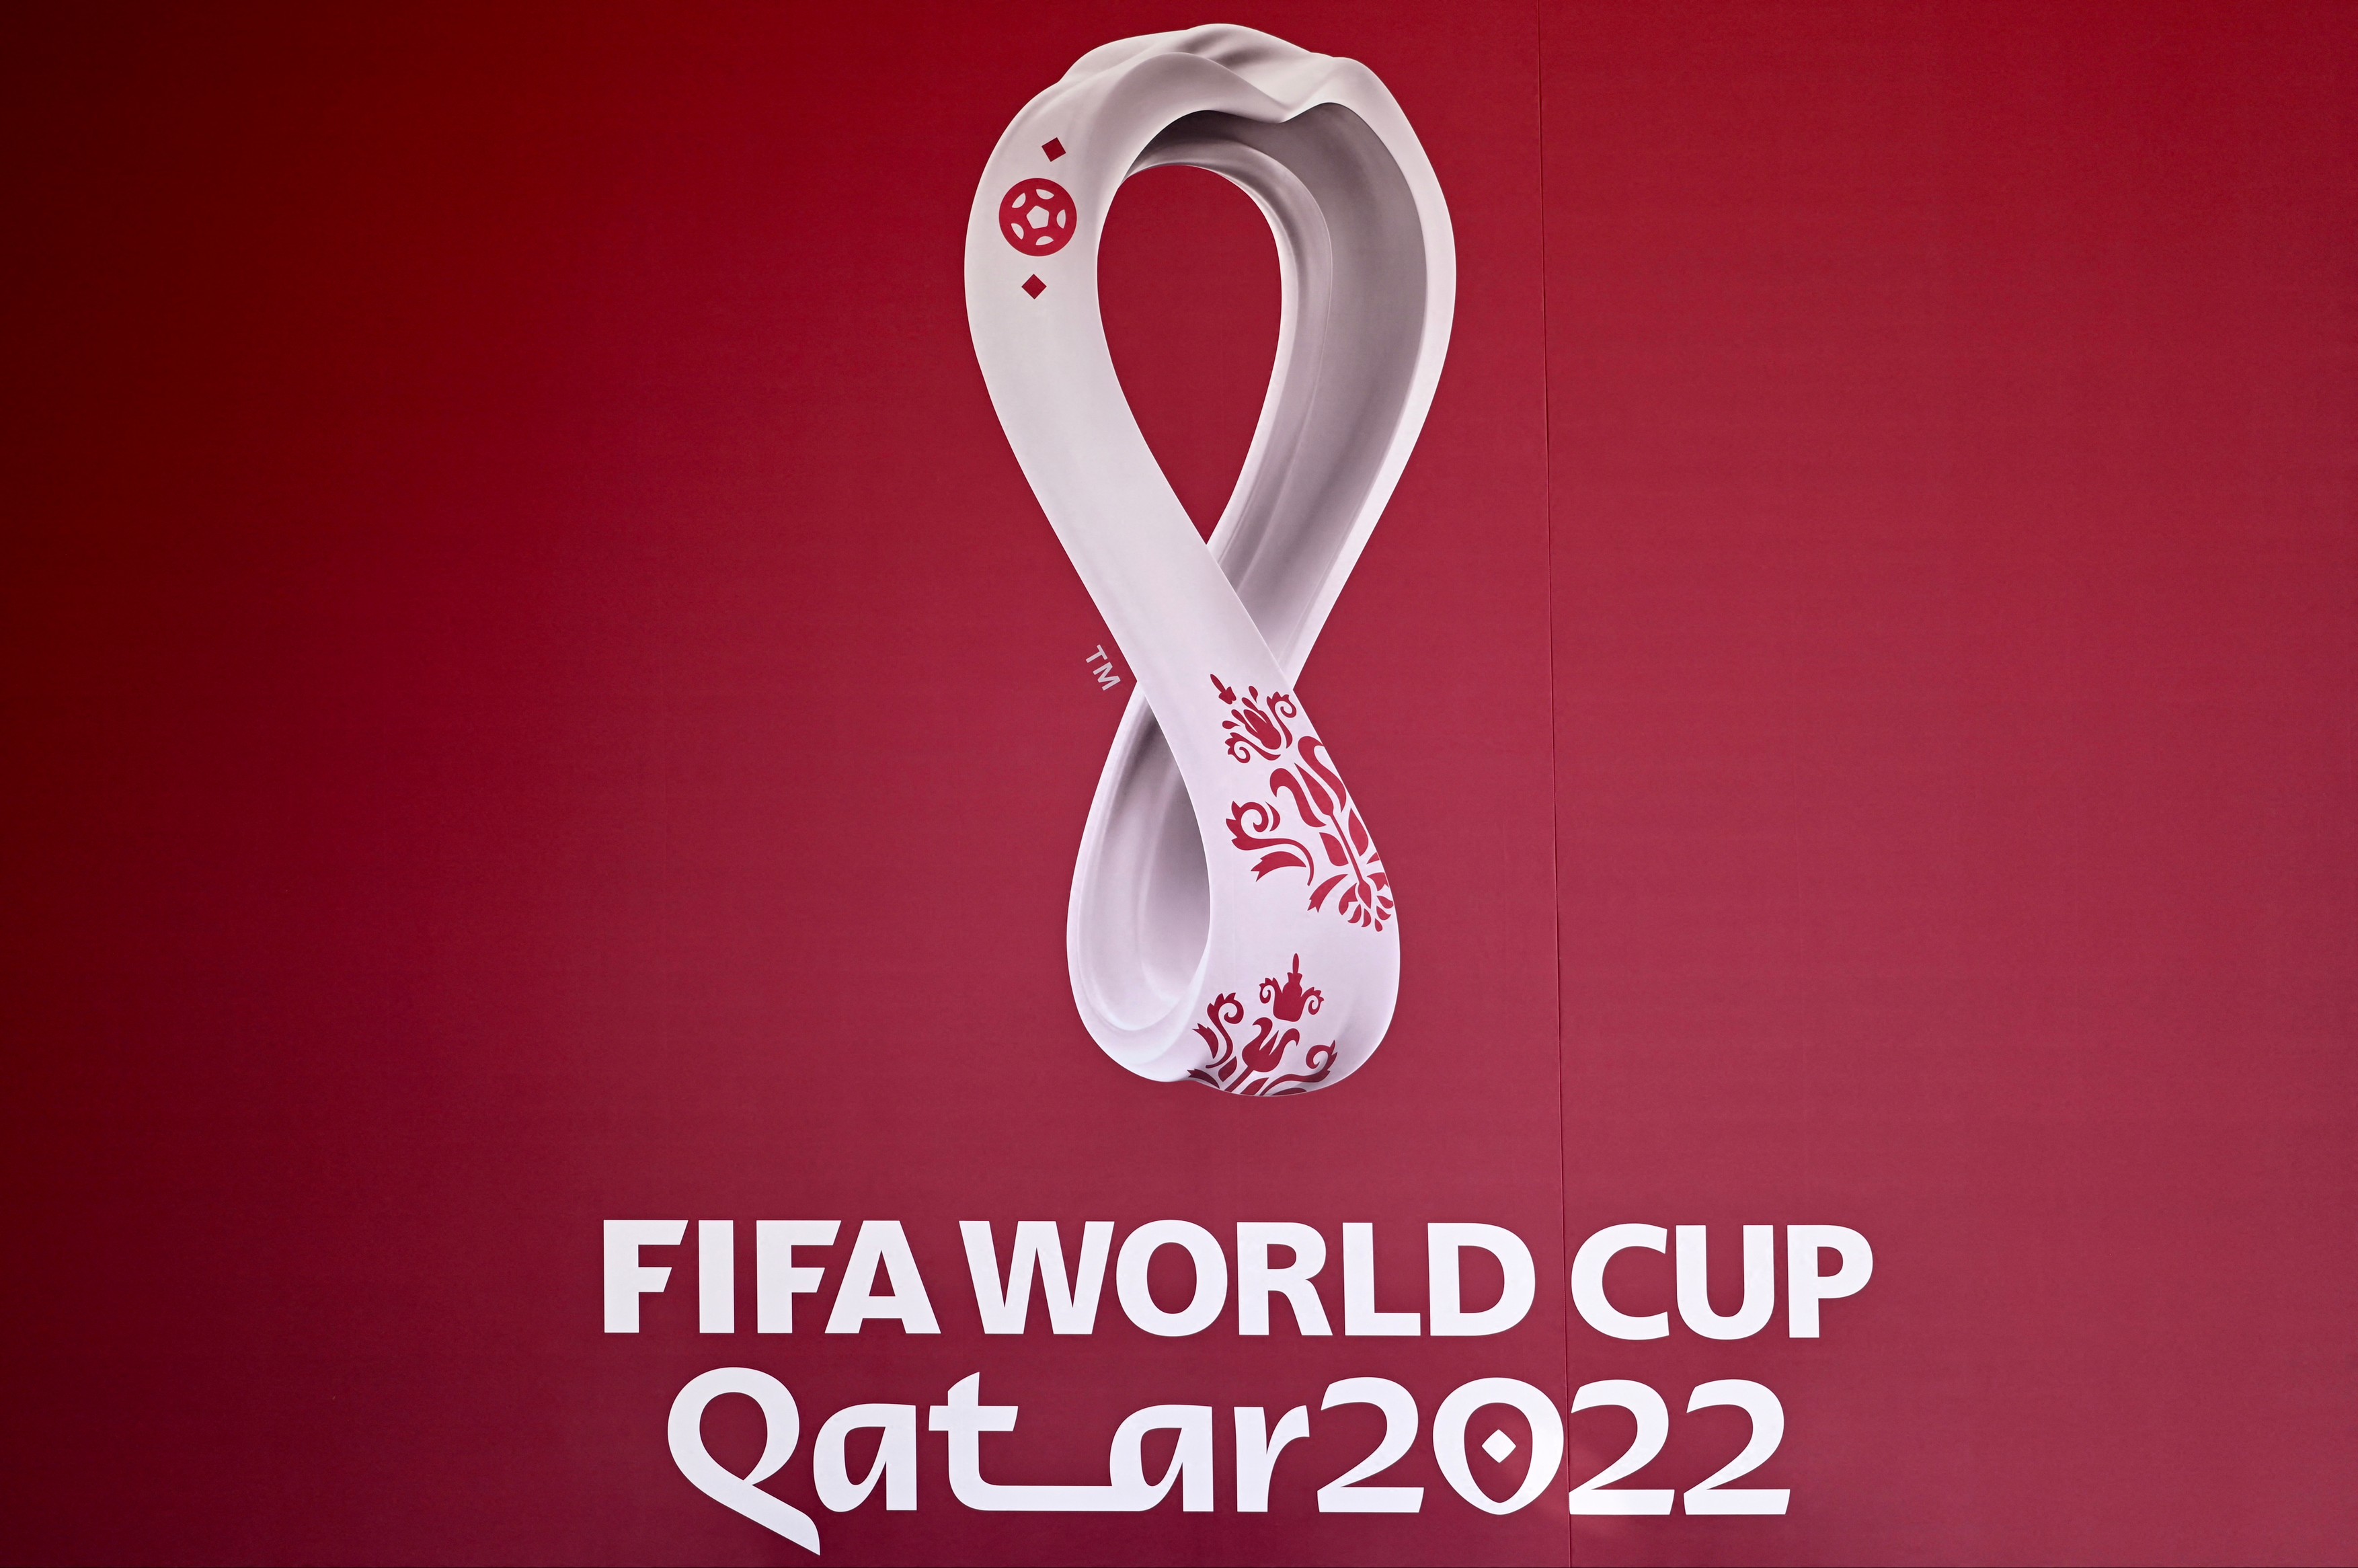 Sepp Blatter recunoaște: A fost o alegere proastă găzduirea Mondialului în Qatar. Unde trebuia să aibă loc turneul final